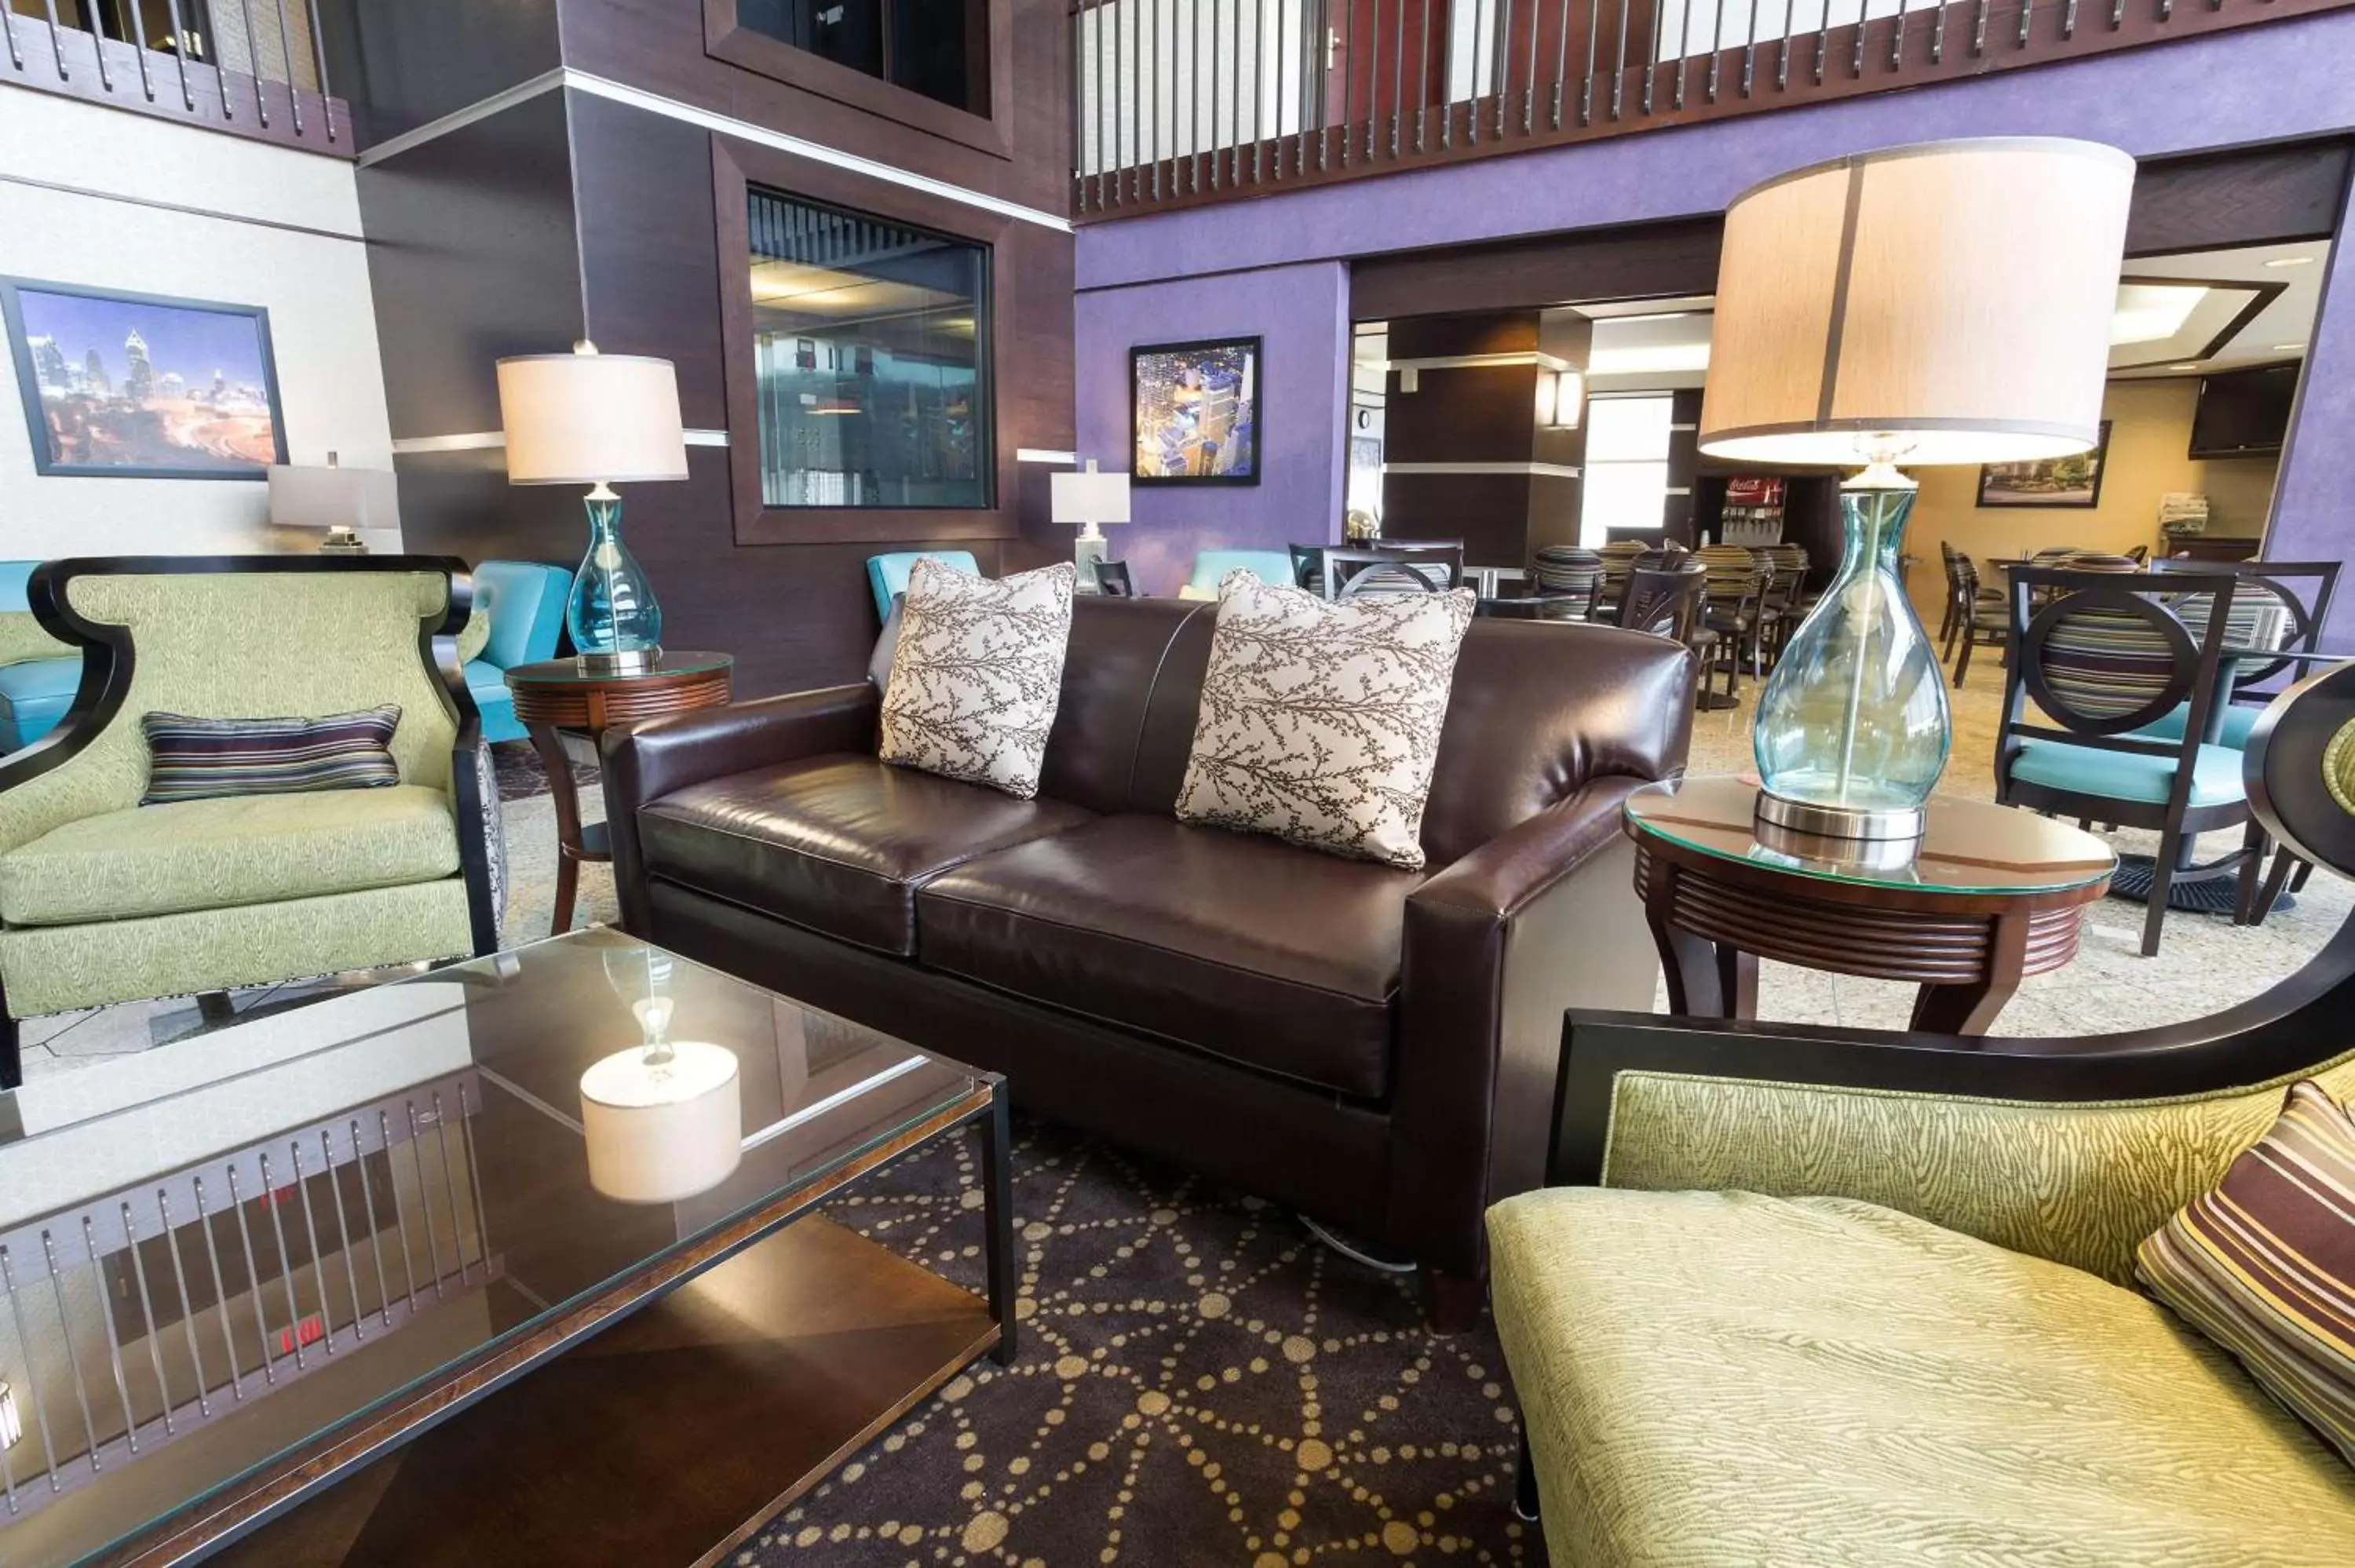 Lobby or reception in Drury Inn & Suites Atlanta Airport